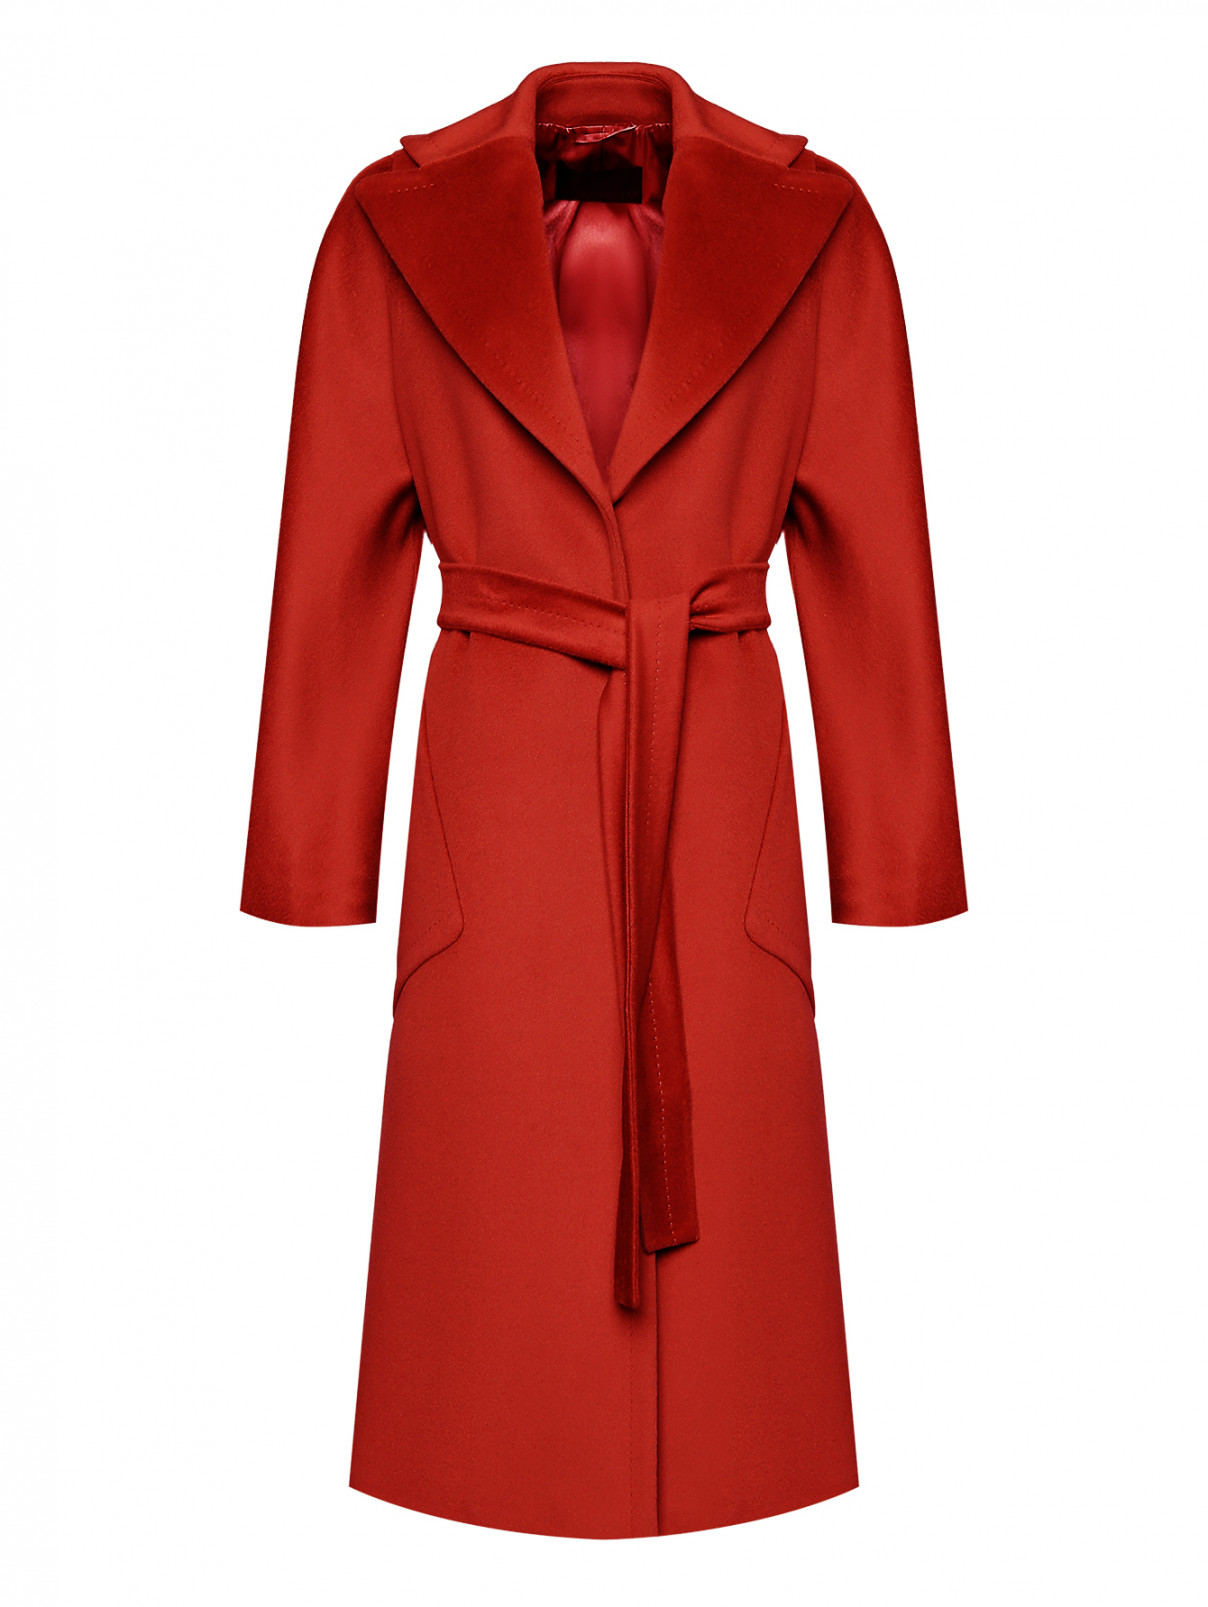 Пальто шерстяное с накладными карманами Marina Rinaldi  –  Общий вид  – Цвет:  Оранжевый